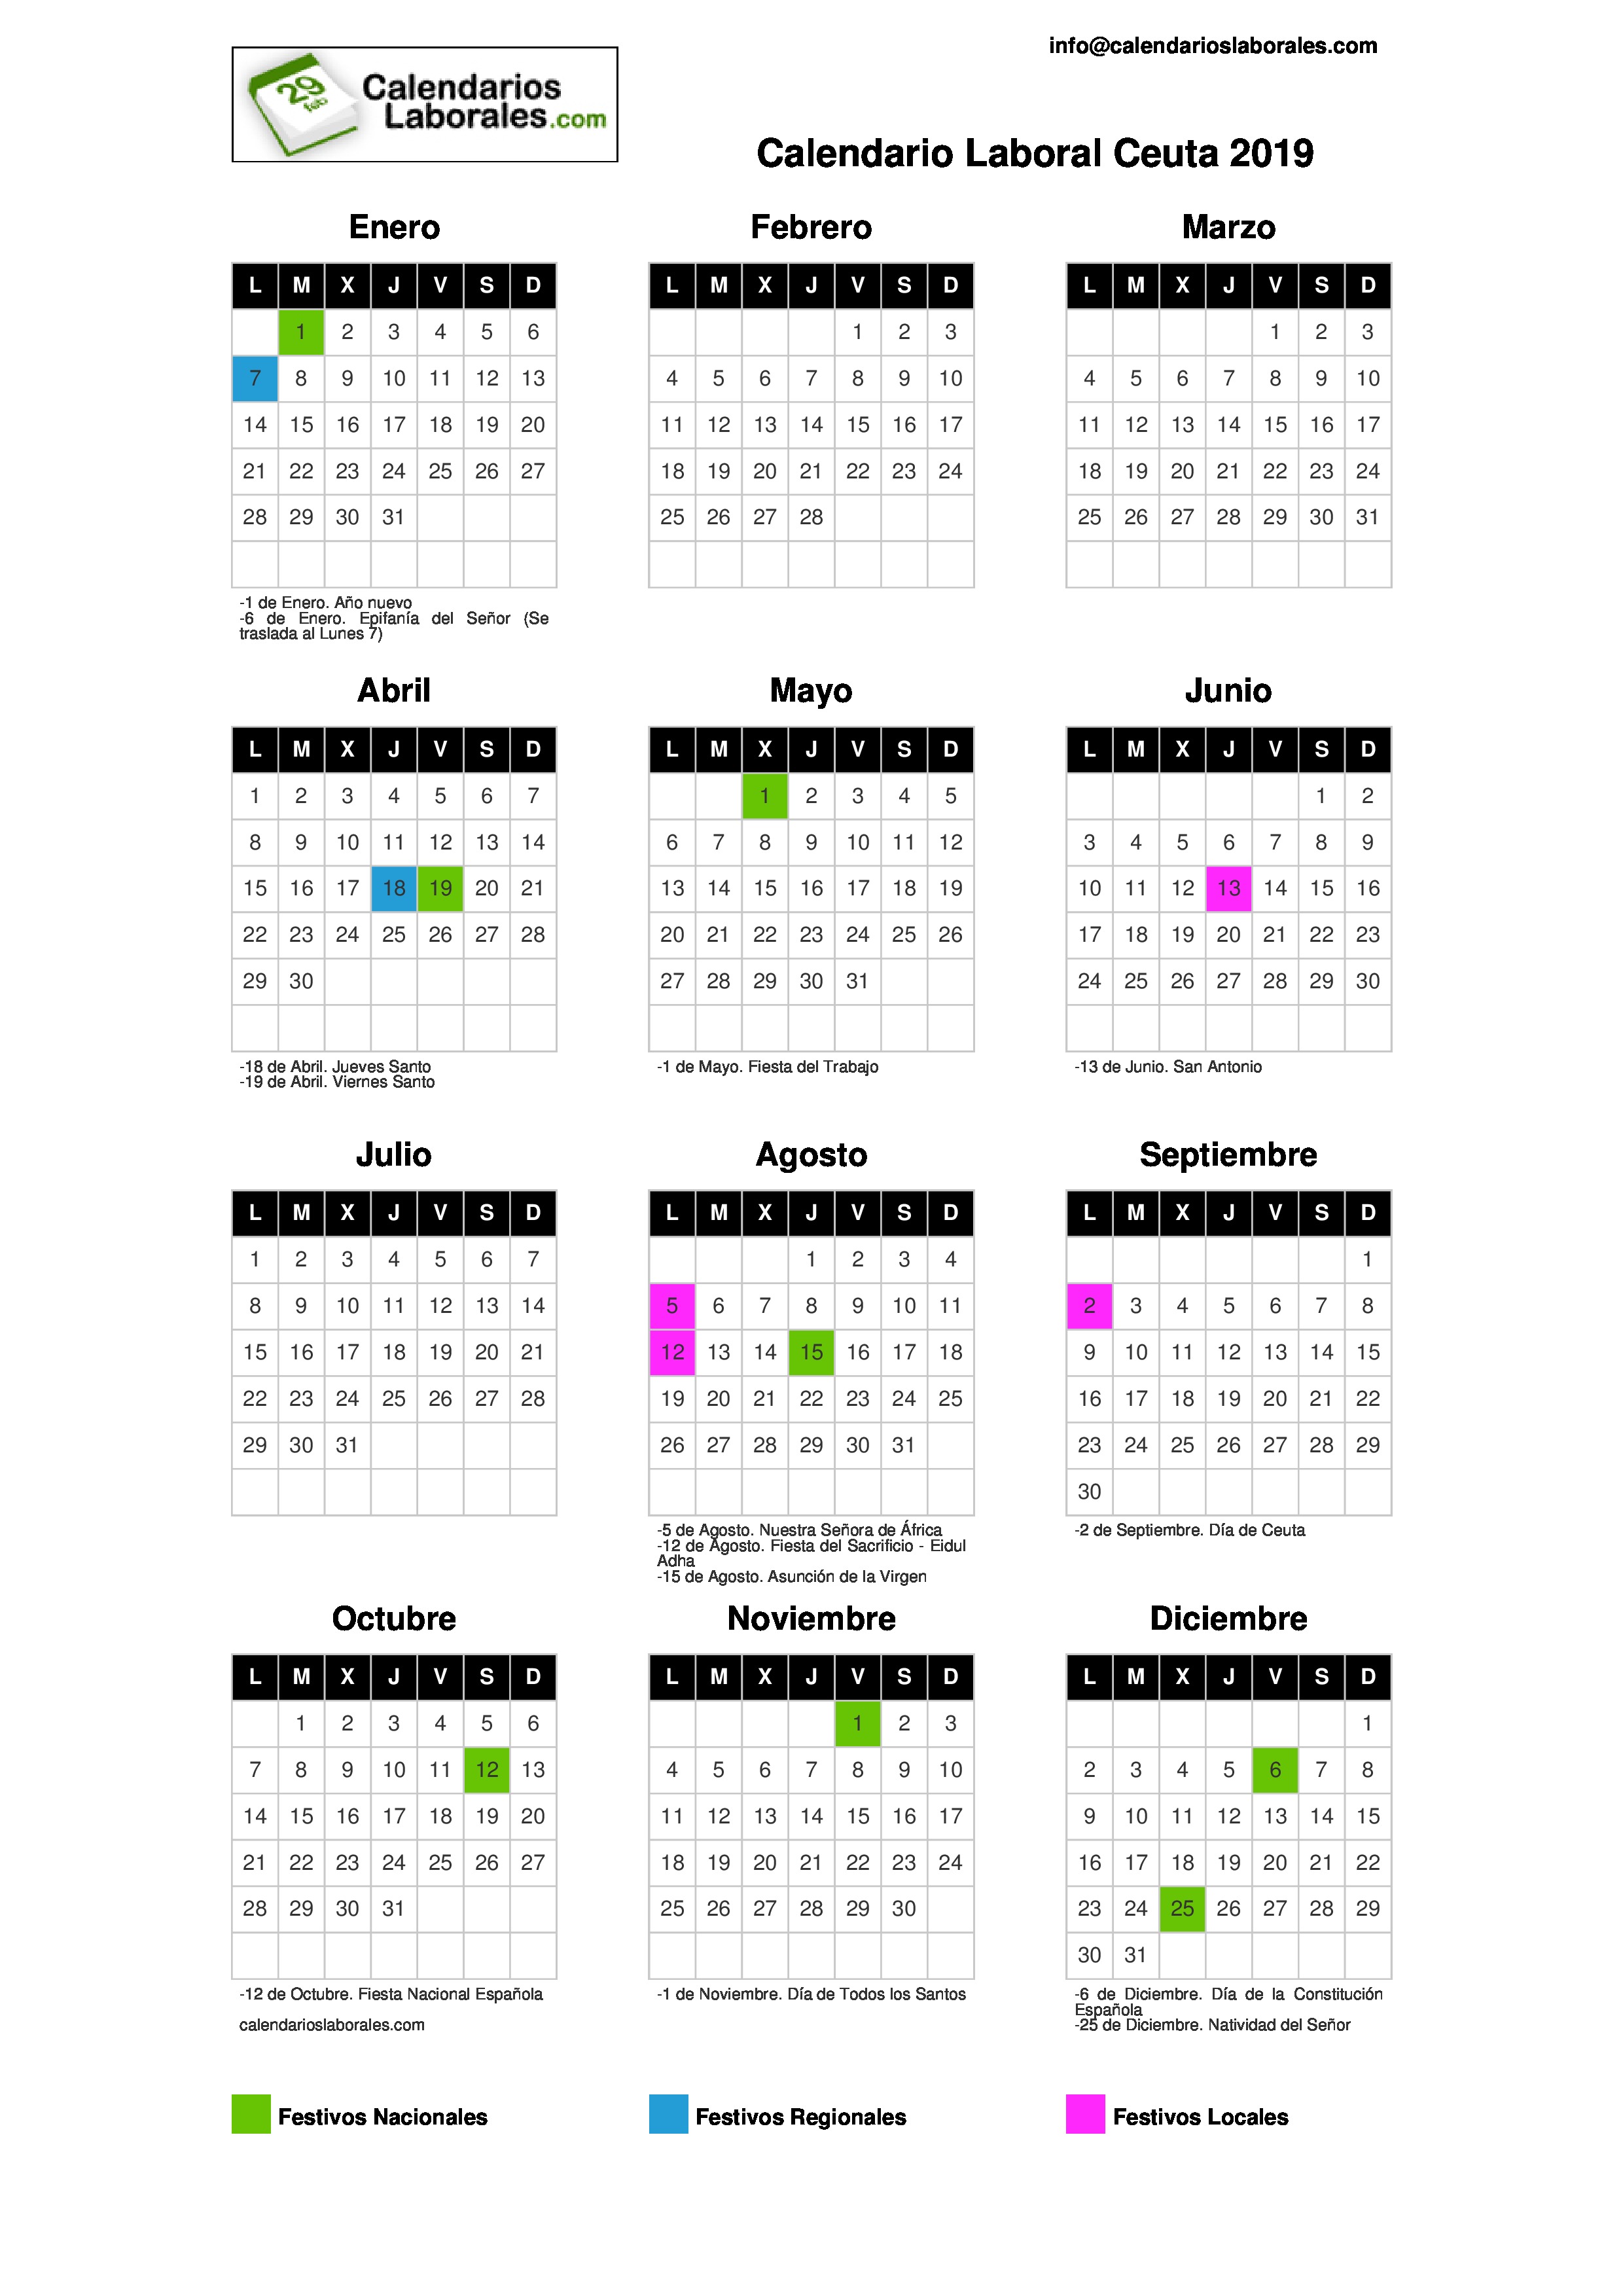 Calendario Laboral Ceuta 20192480 x 3508